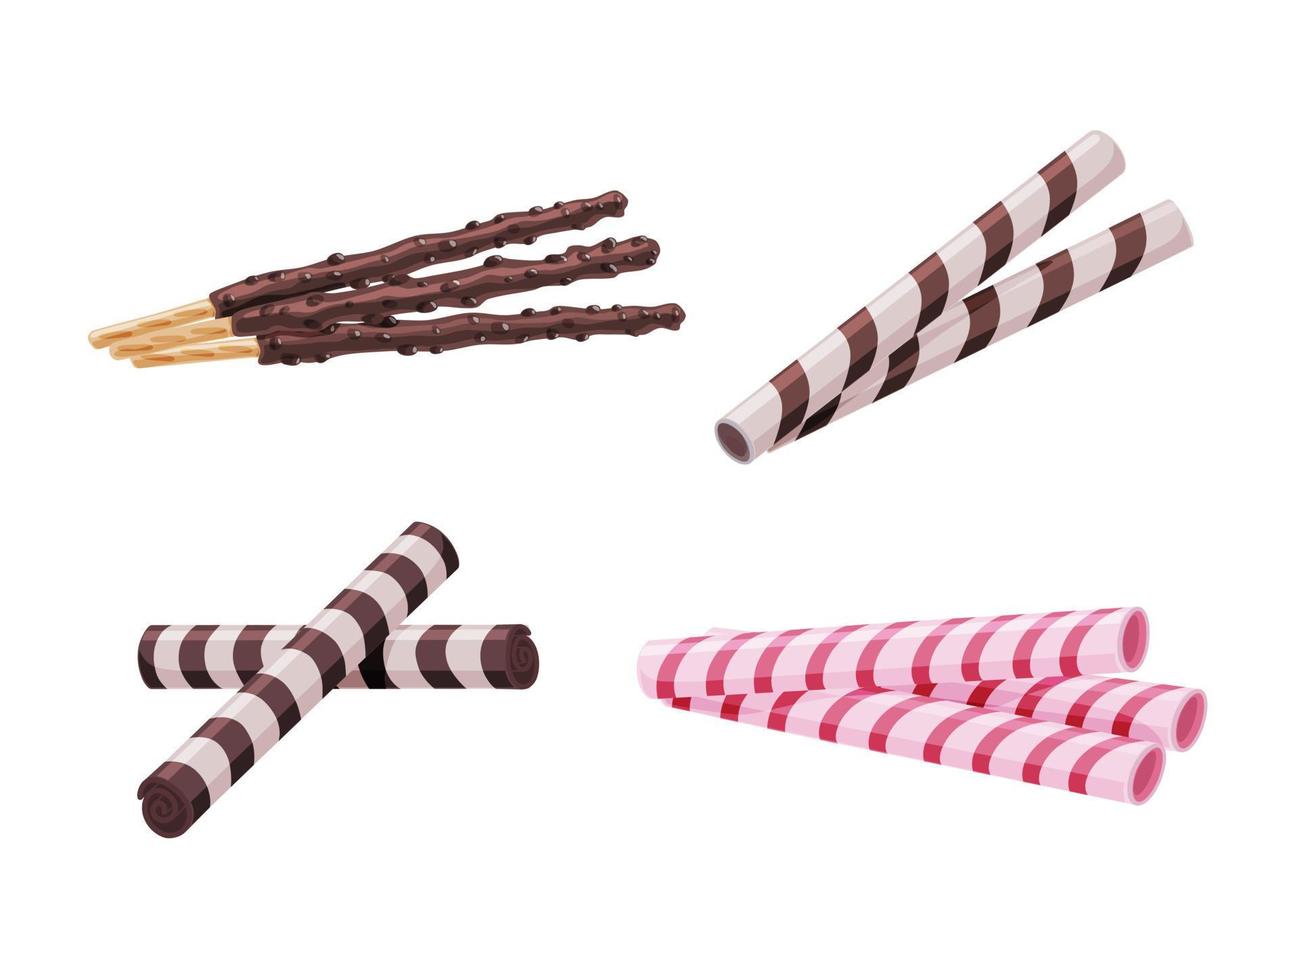 différents bâtonnets de gaufres biscuits au chocolat sur fond blanc isolé. dessert délicieux. illustration de dessin animé de vecteur